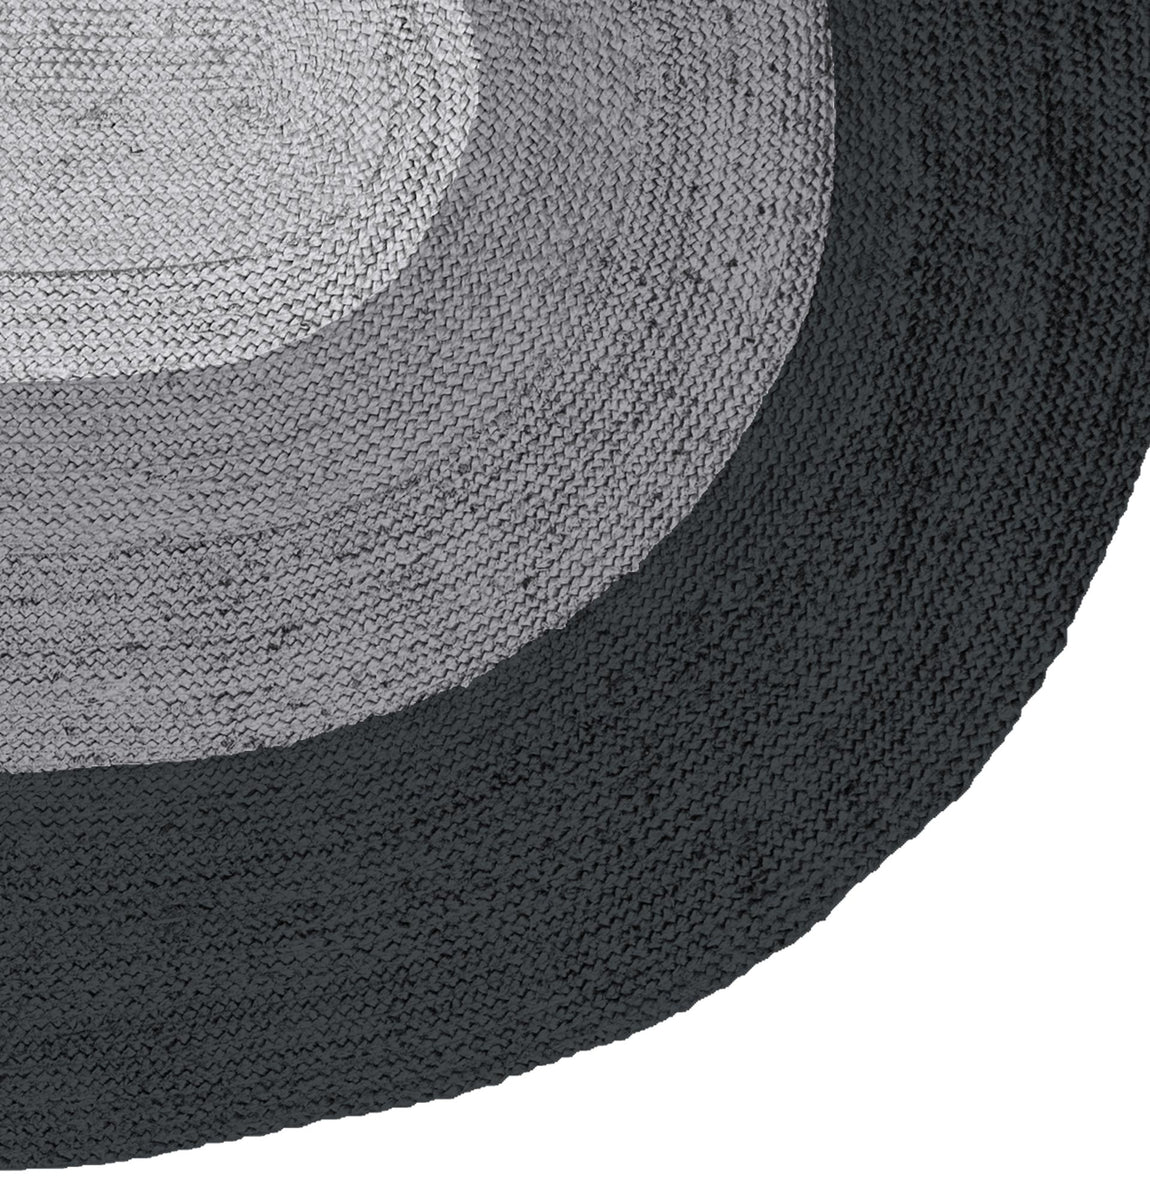 Teppich BORDER 170x300 cm oval aus Jute schwarz/grau – ALLES GOLD WAS GLÄNZT | Kurzflor-Teppiche